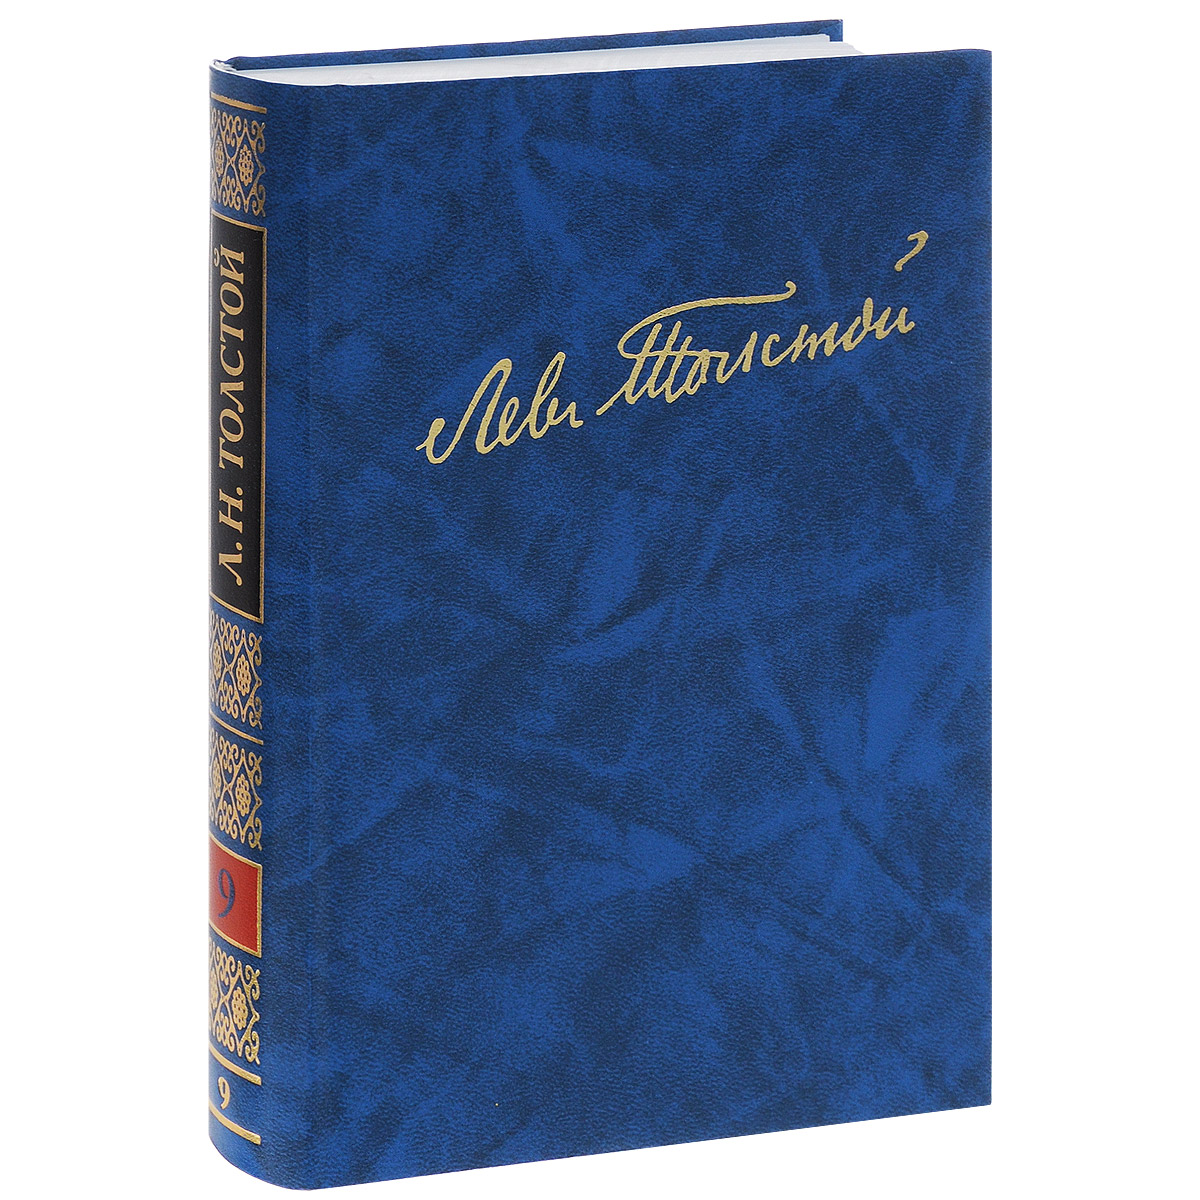 Л. Н. Толстой. Полное собрание сочинений в 100 томах. Том 9. Л. Н. Толстой